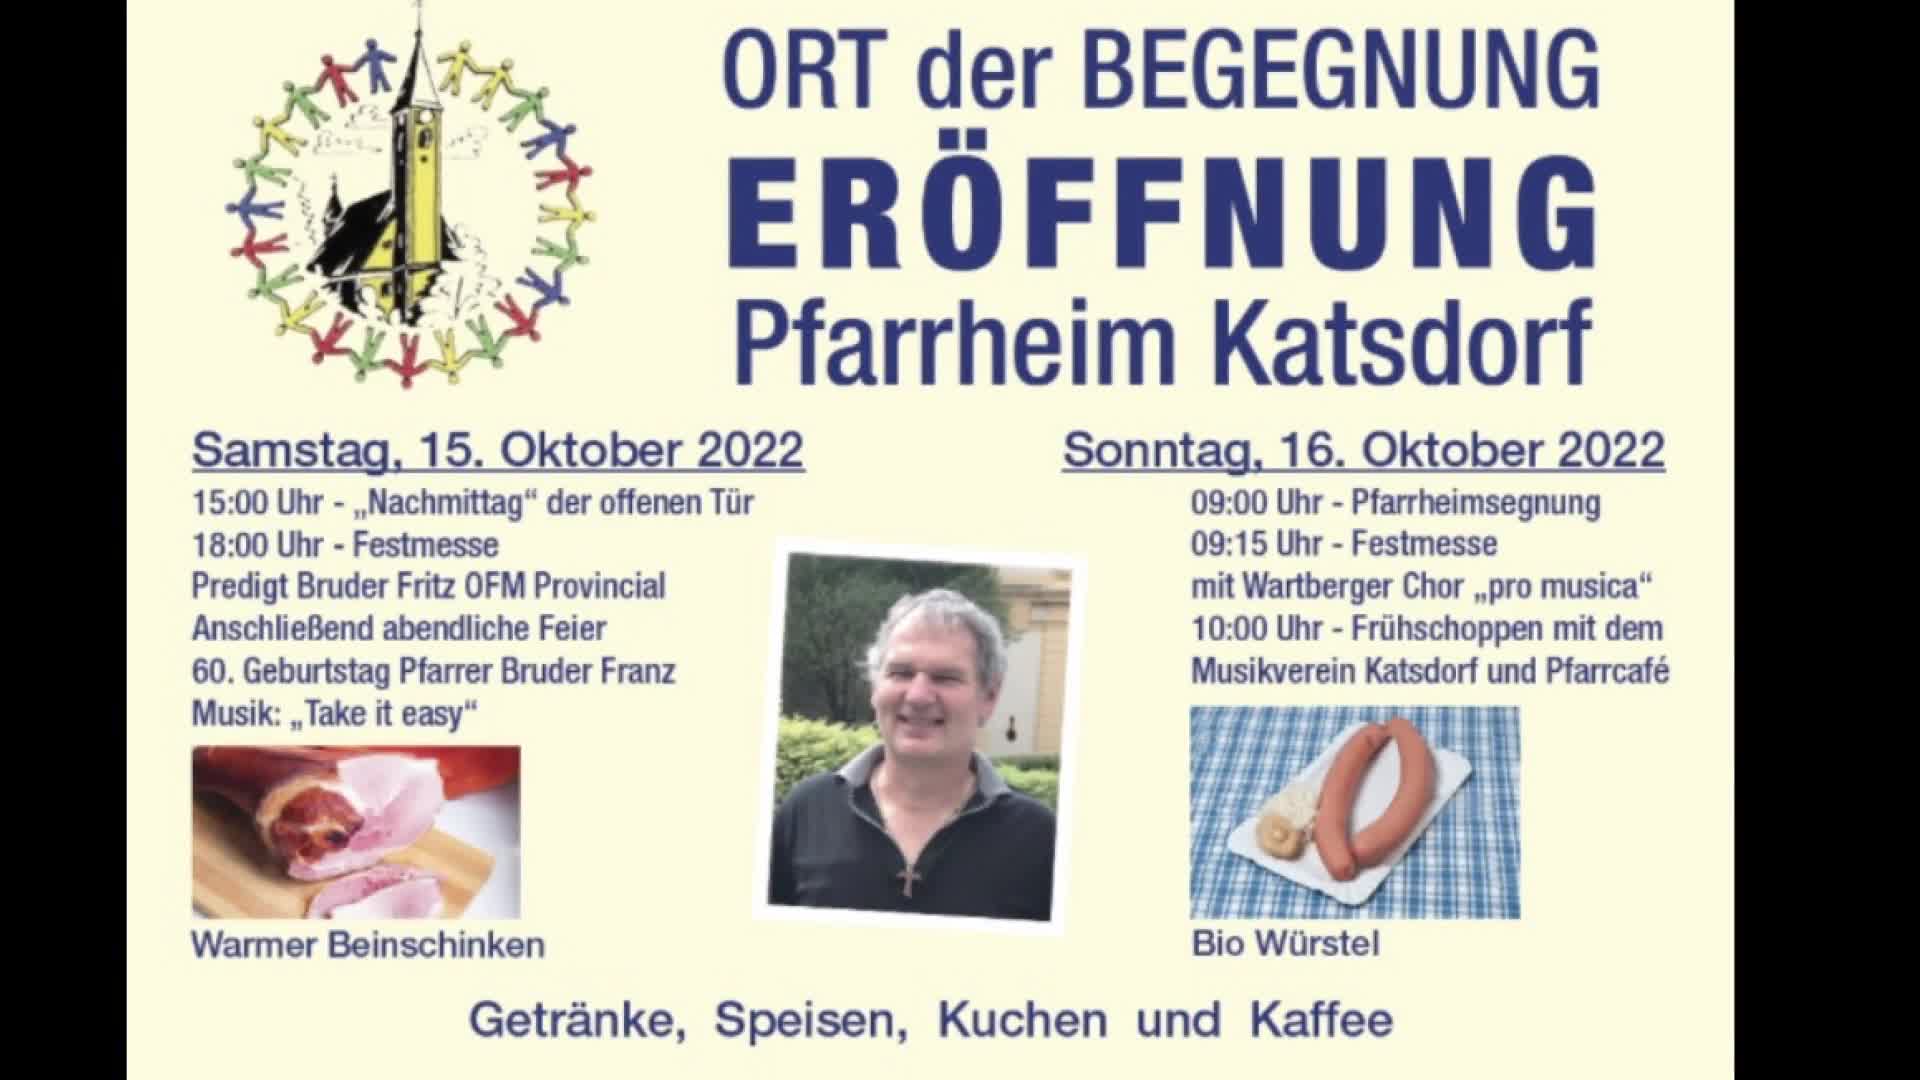 Eröffnung Pfarrheim Katsdorf